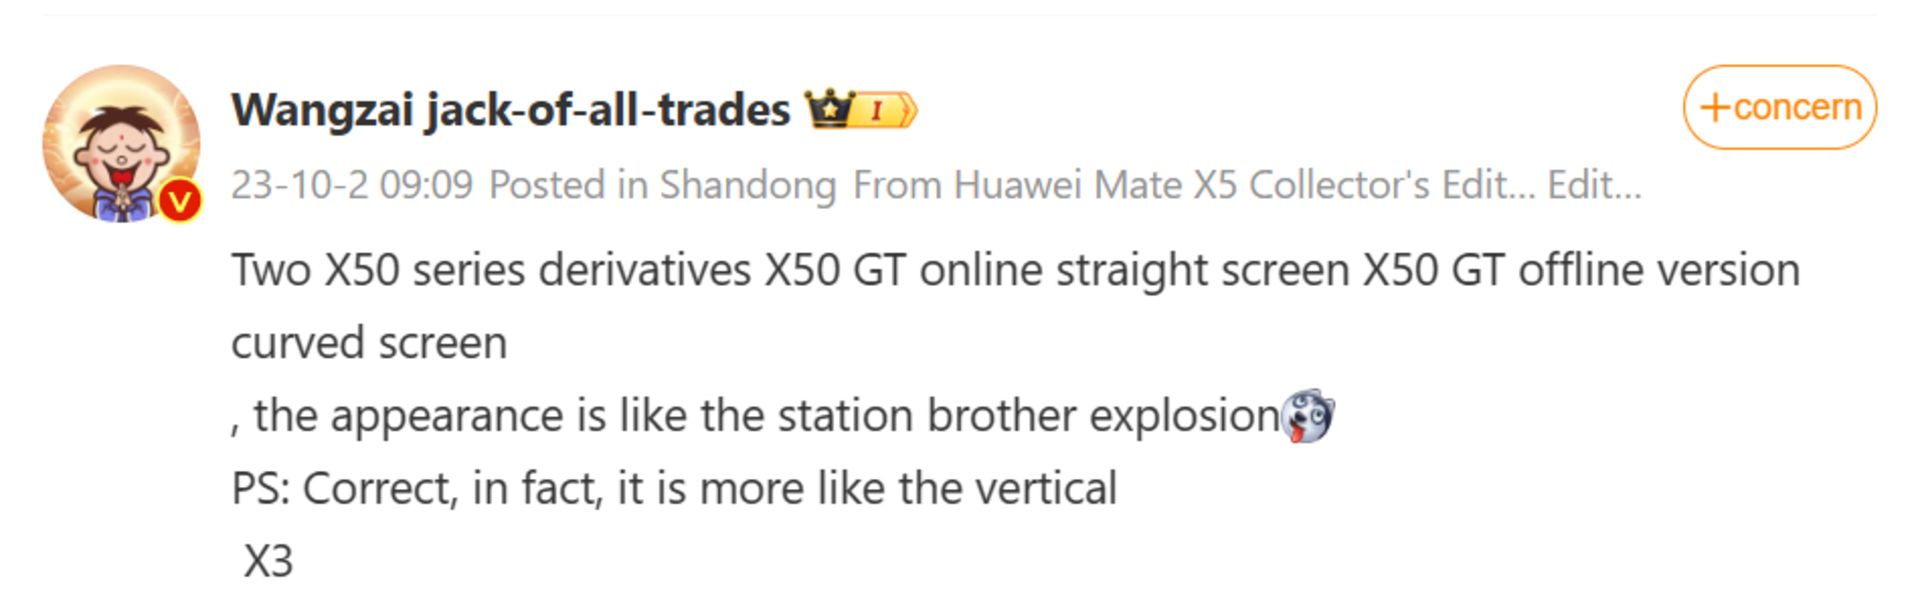 پست wangzaibaishitong از نمایشگر آنر X50GT در شبکه اجتماعی ویبو